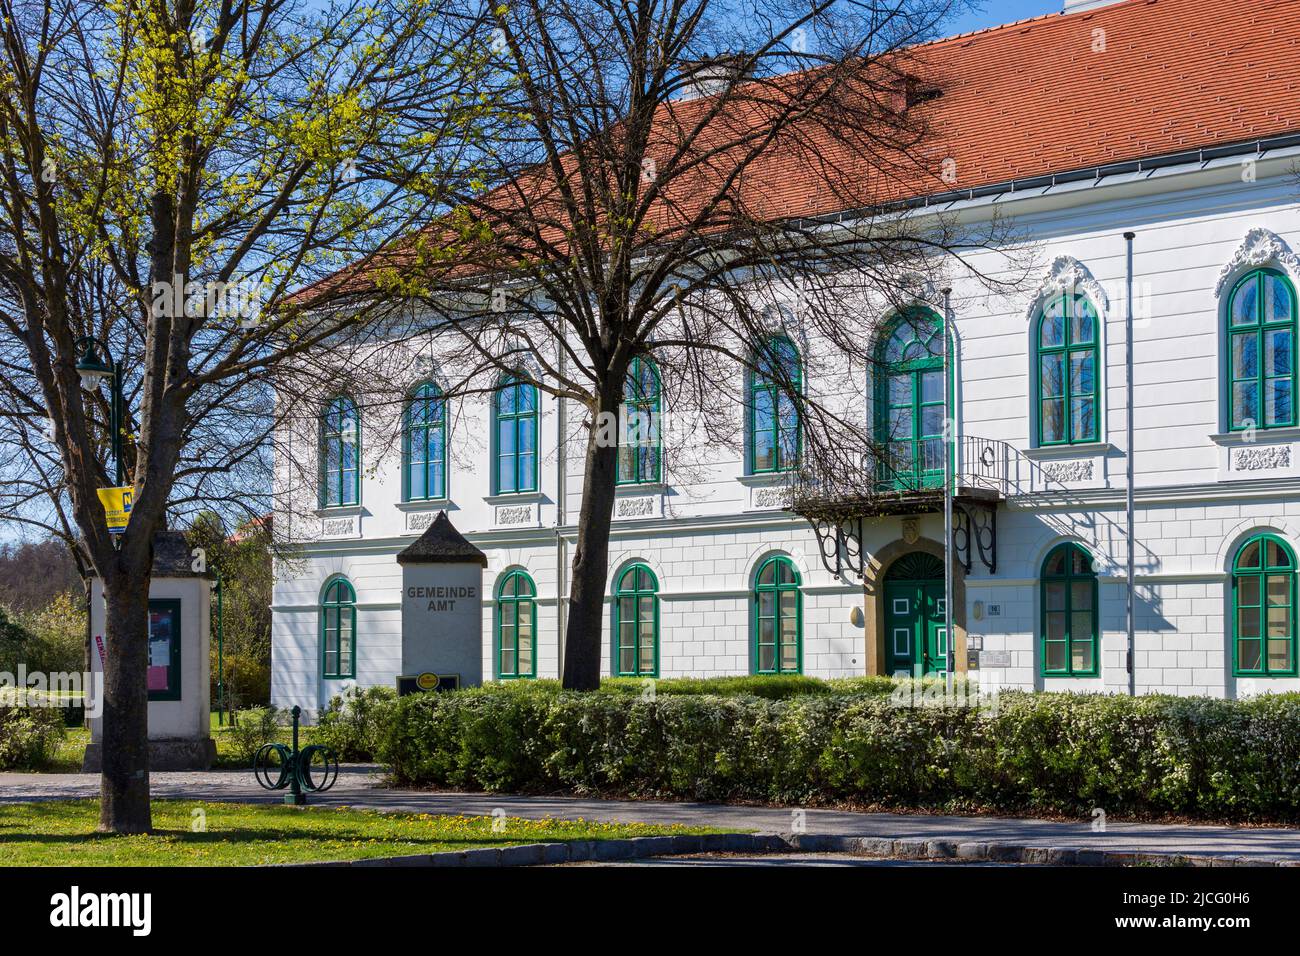 Hausleiten, Town Hall Hausleiten, Donau region, Lower Austria, Austria Stock Photo